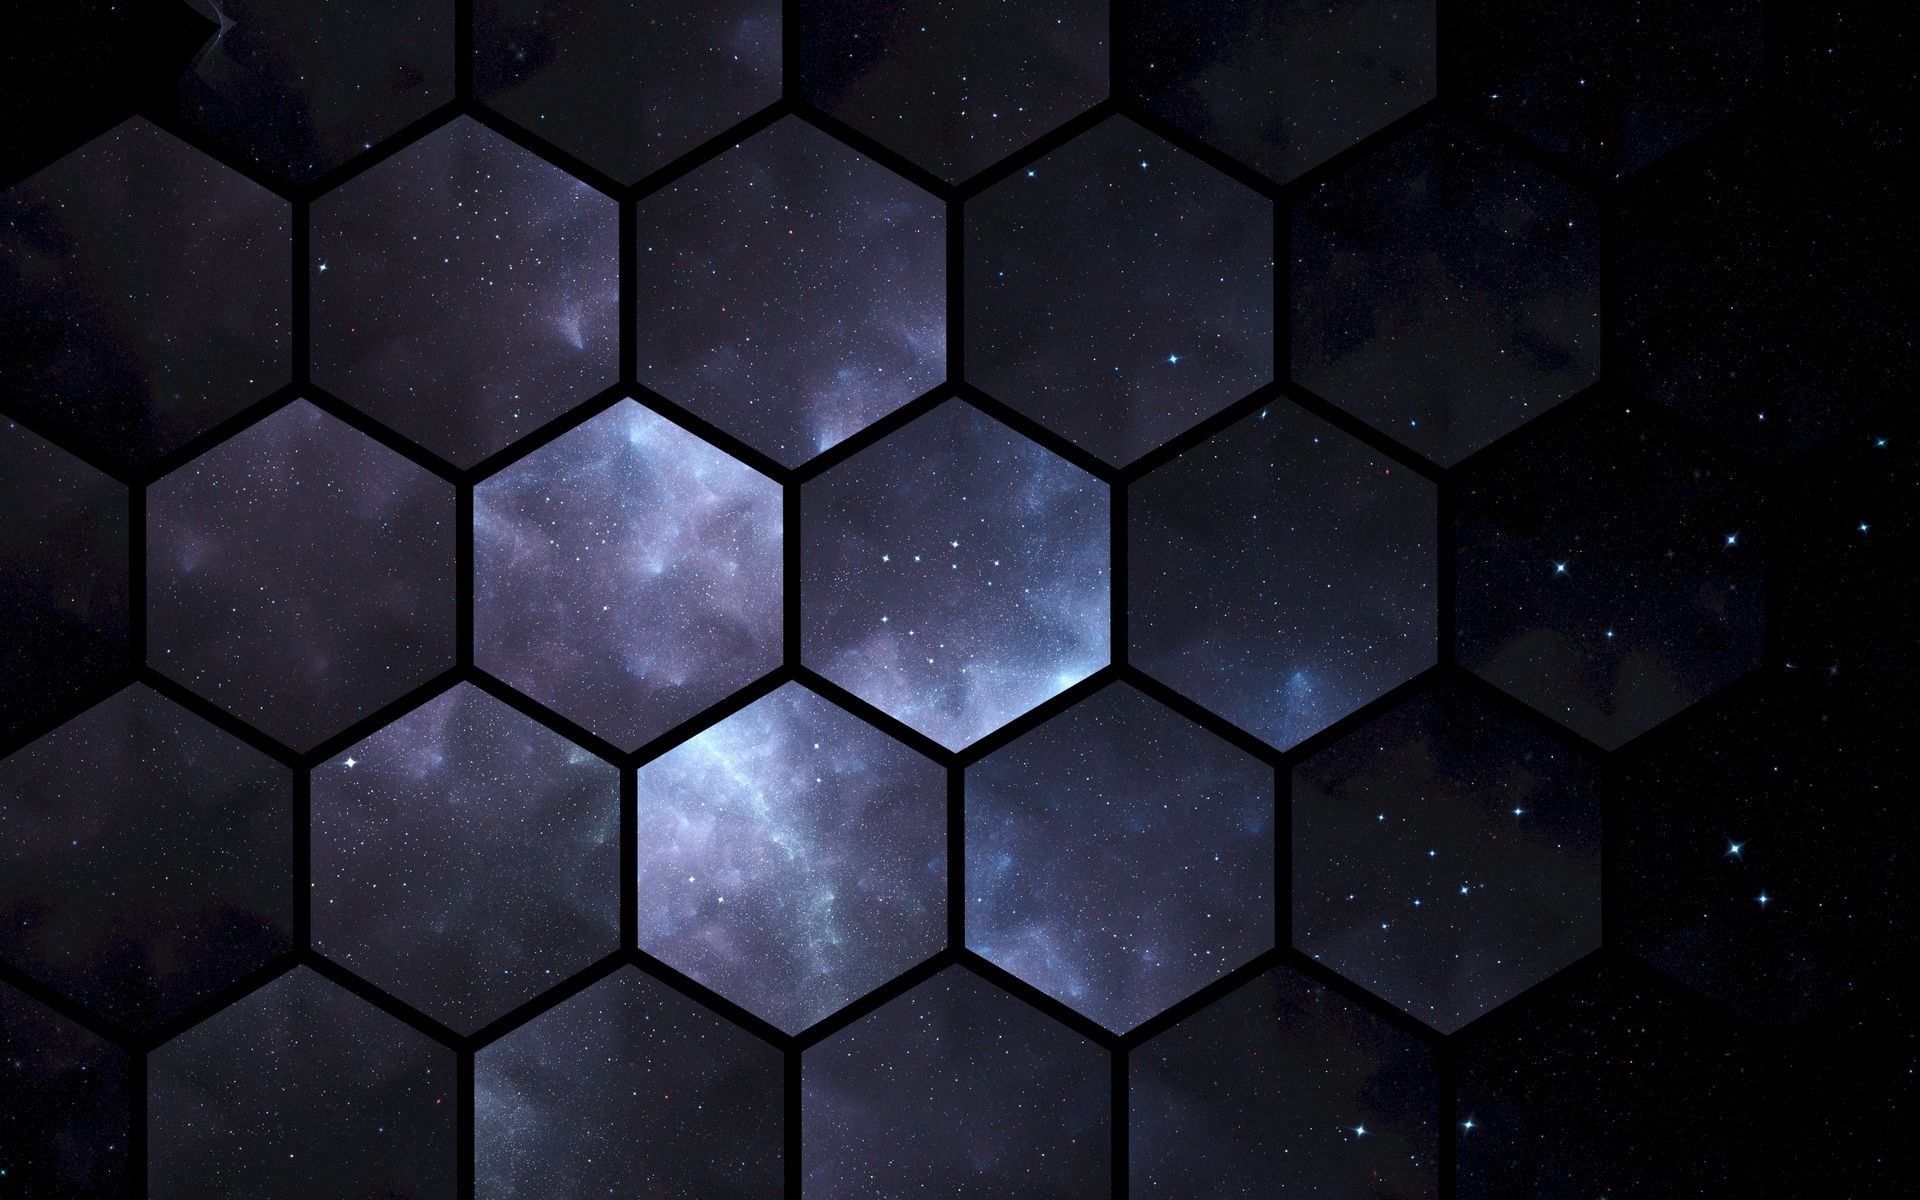 Download wallpaper x hexagons space patterns widescreen hd background hexagon wallpaper hexagon wallpaper